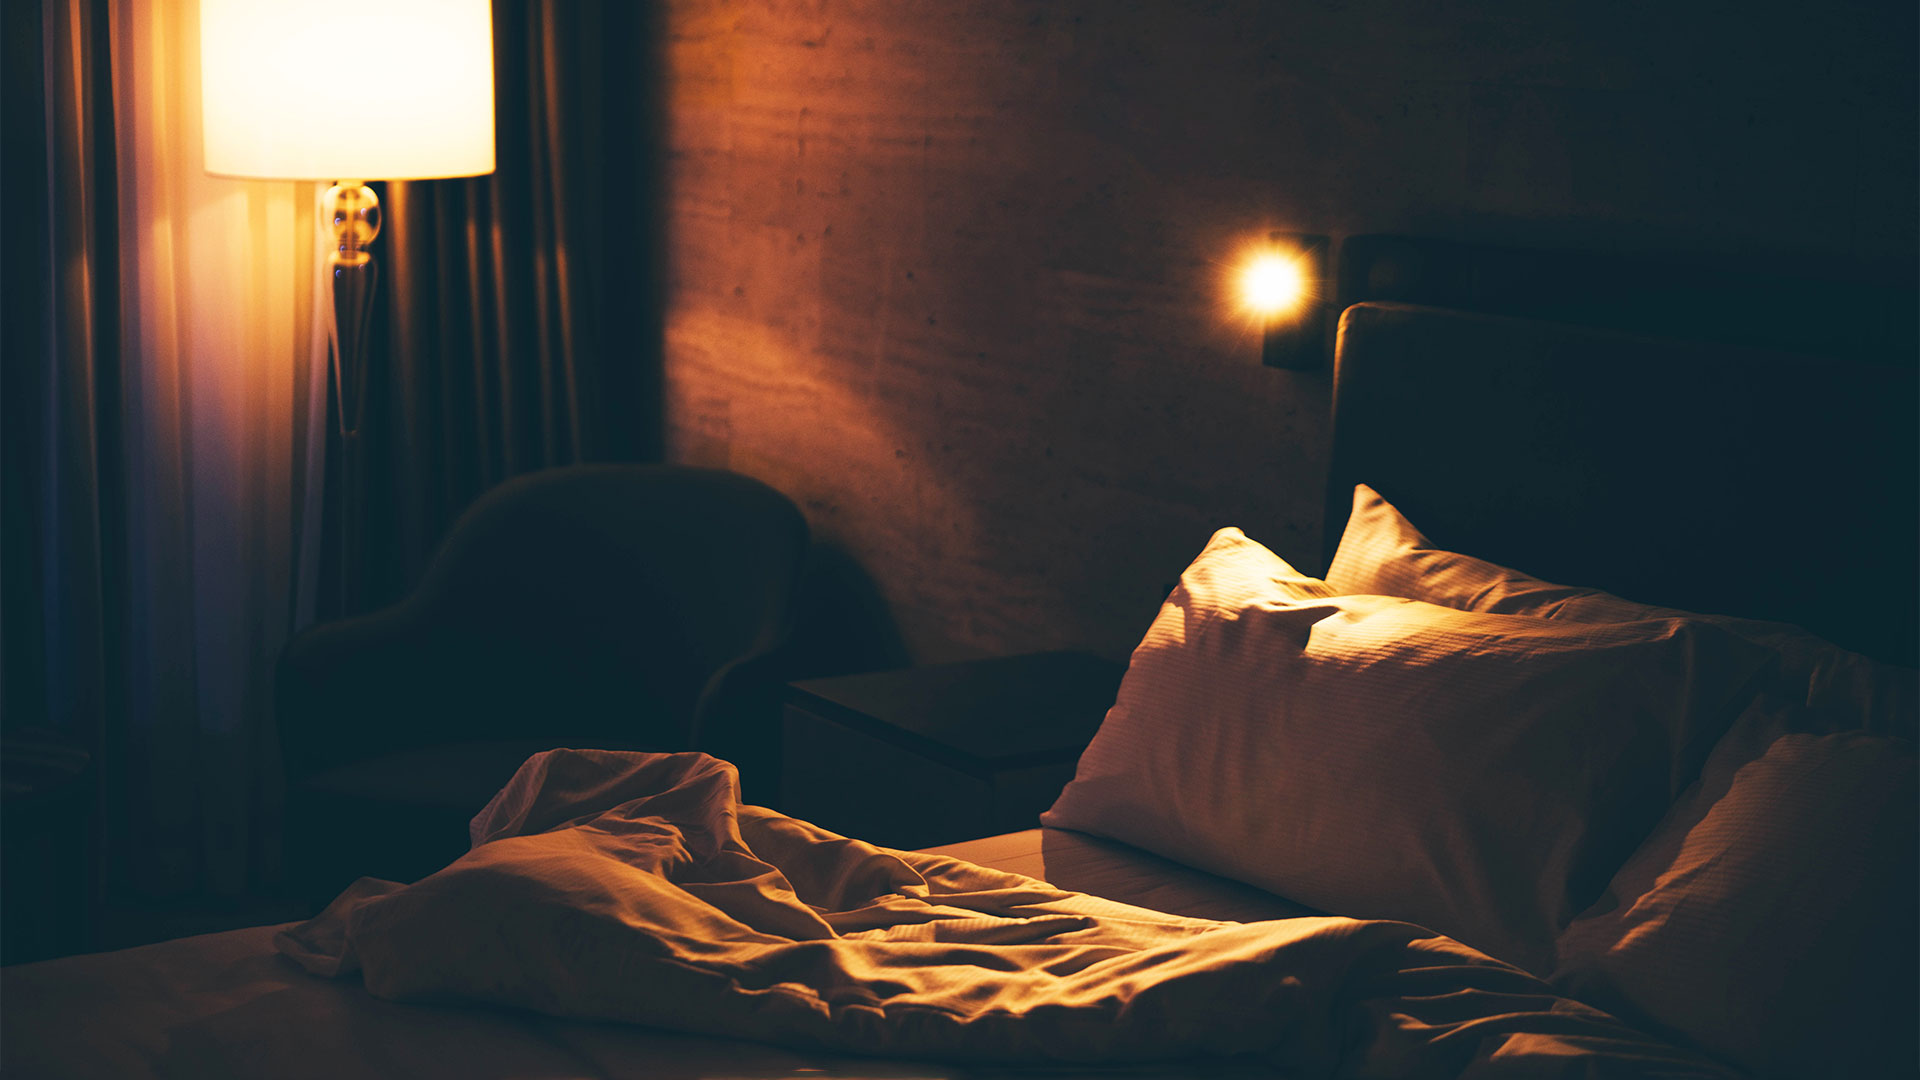 El dormitorio donde se va a dormir debe ser un ambiente tranquilo sin luces brillantes ni sonidos intensos (Getty)